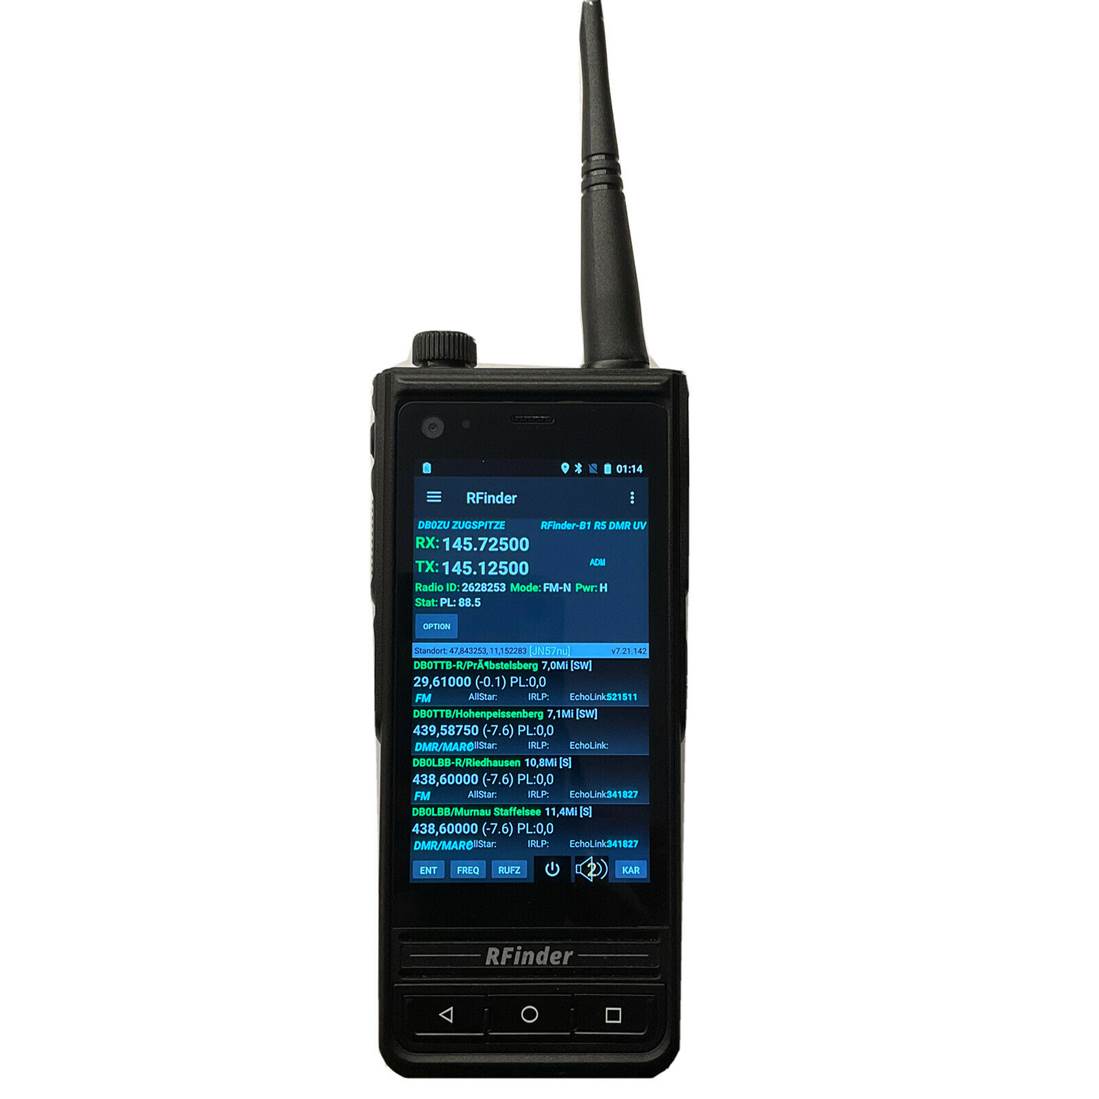 Bild 1 - Rfinder B1 Dual Band DMR 4G/LTE